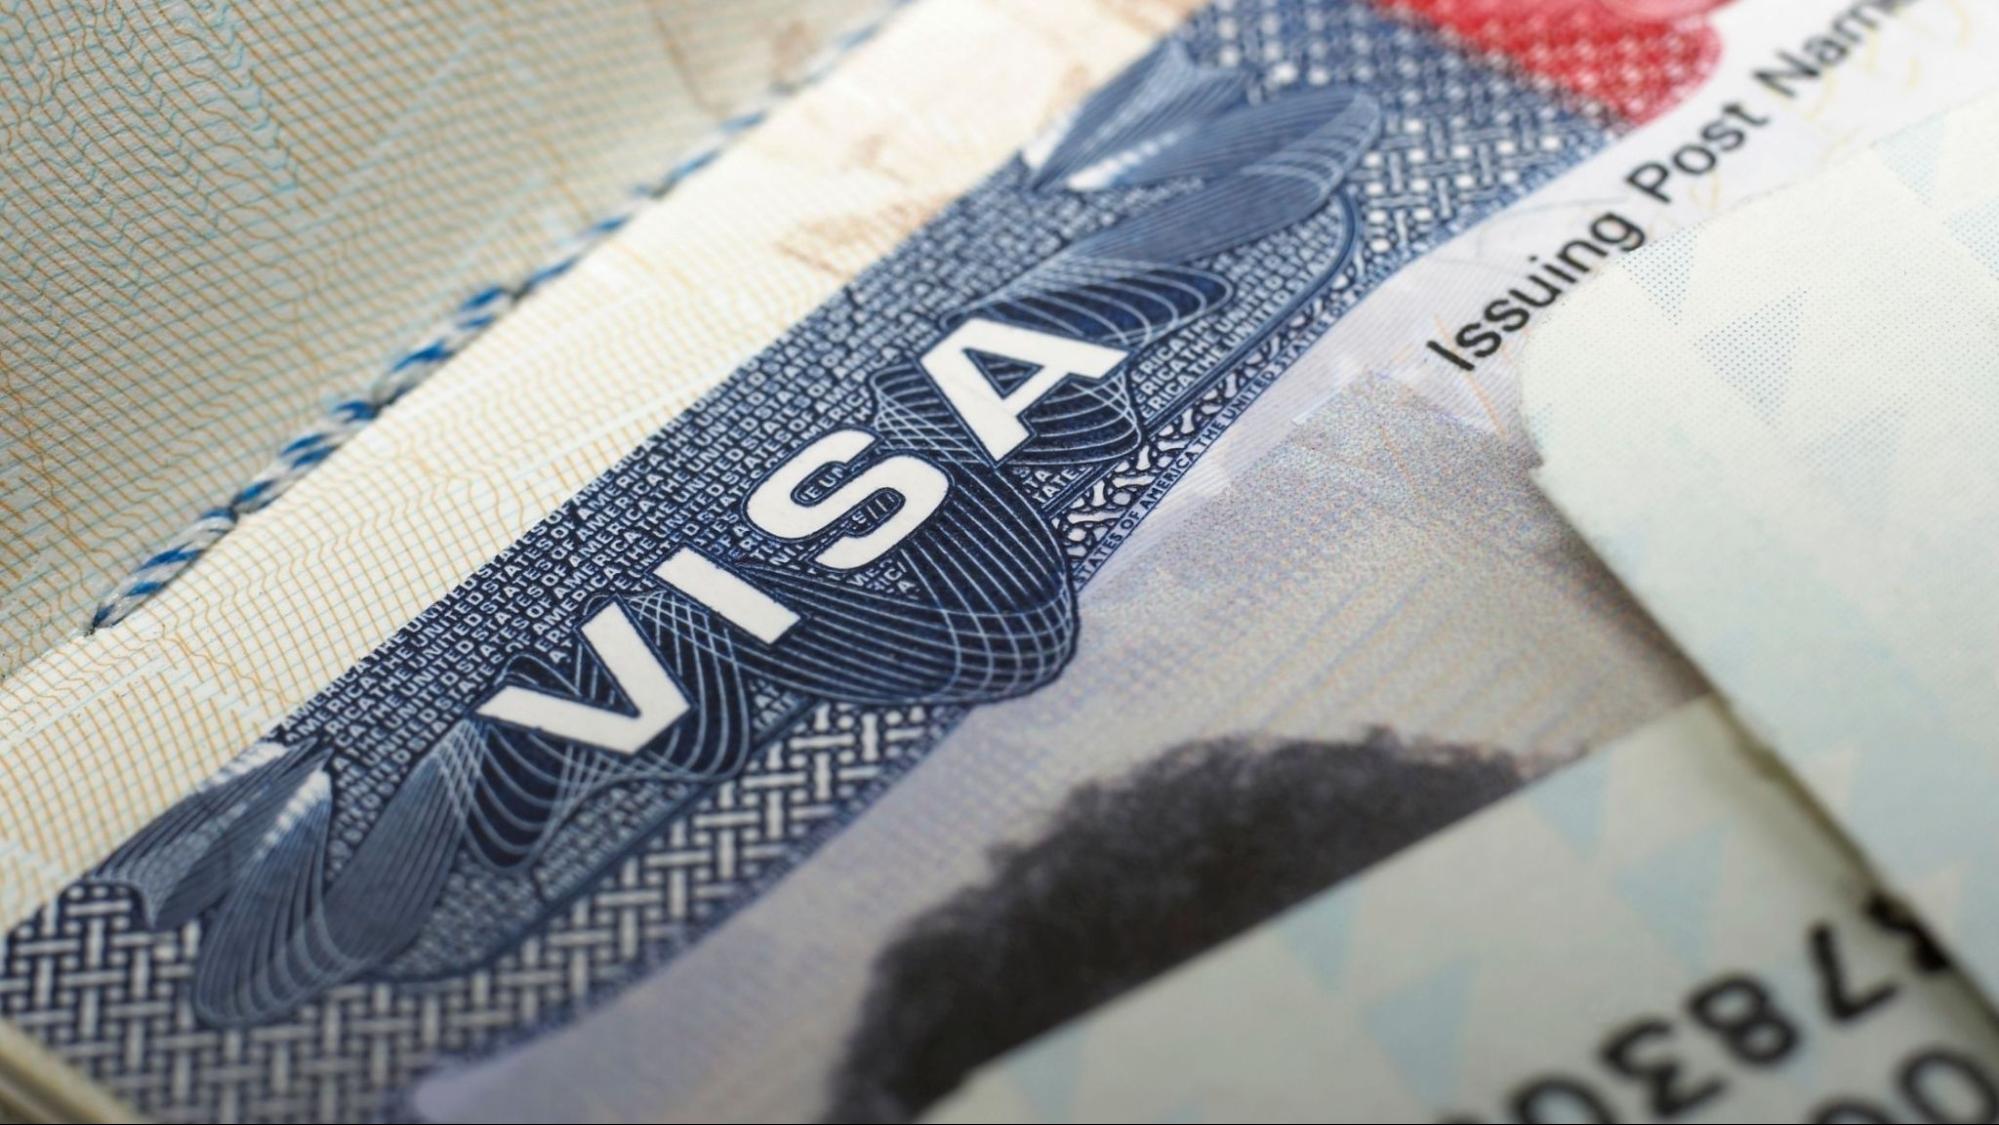 kenya tourist visa length